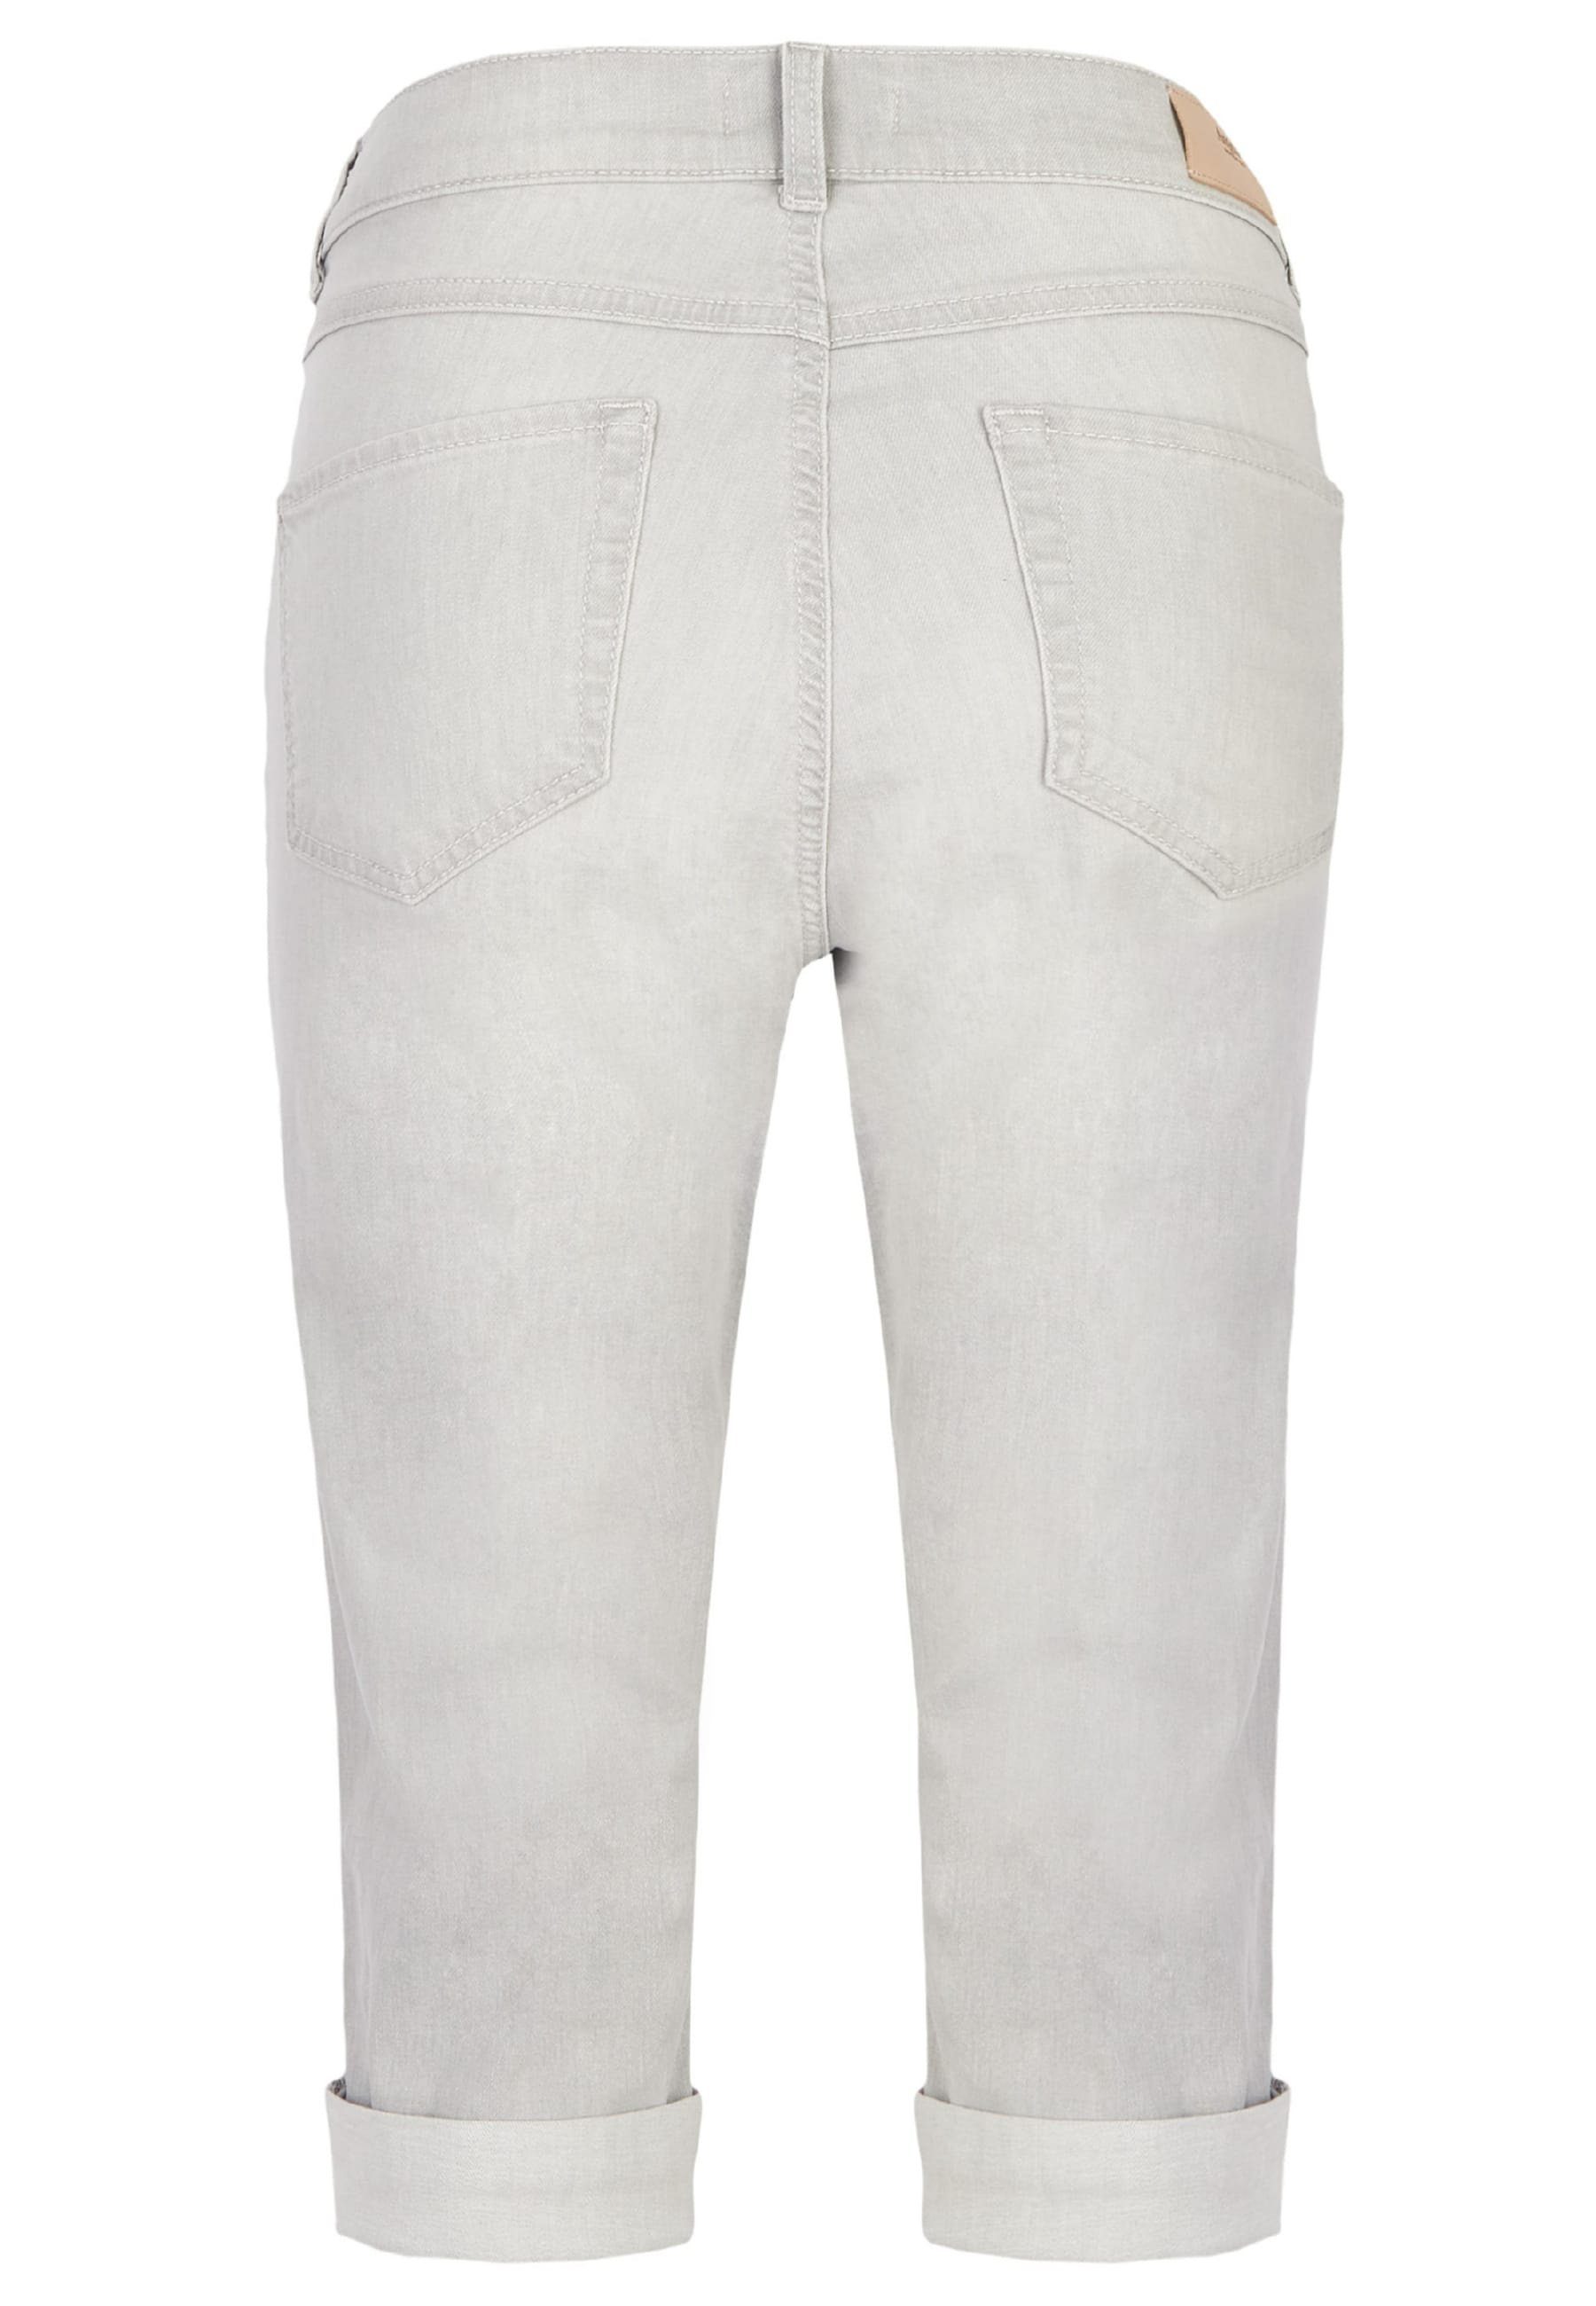 5-Pocket-Jeans Used-Look mit hellgrau Capri mit TU Jeans ANGELS Label-Applikationen